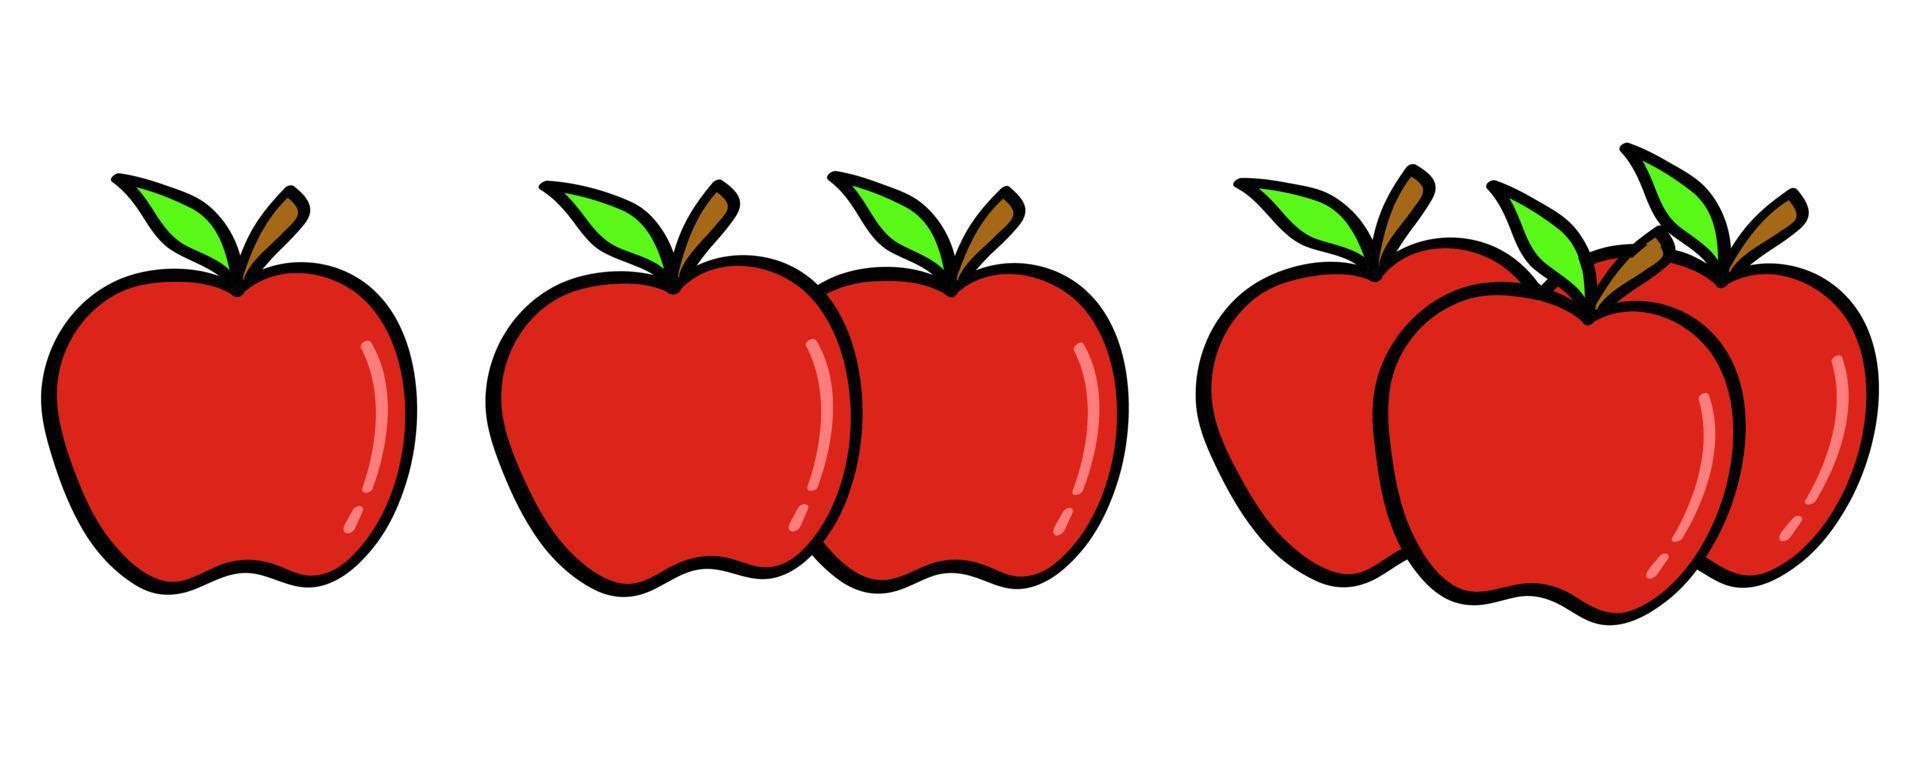 manzana dibujada a mano en estilo garabato vector